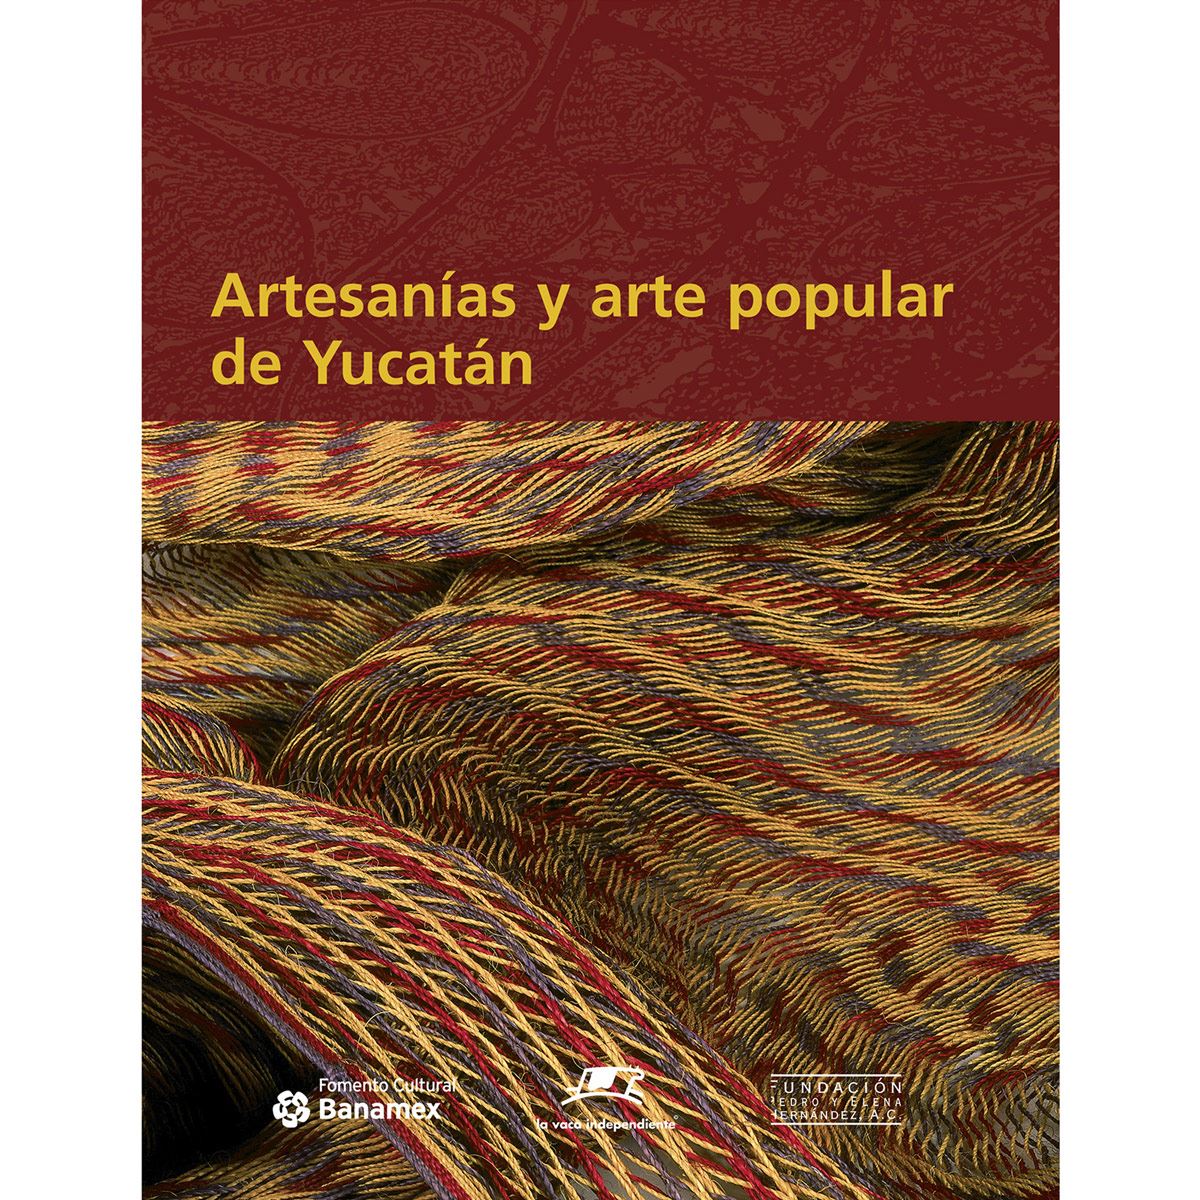 Artesanias y arte popular de Yucatán